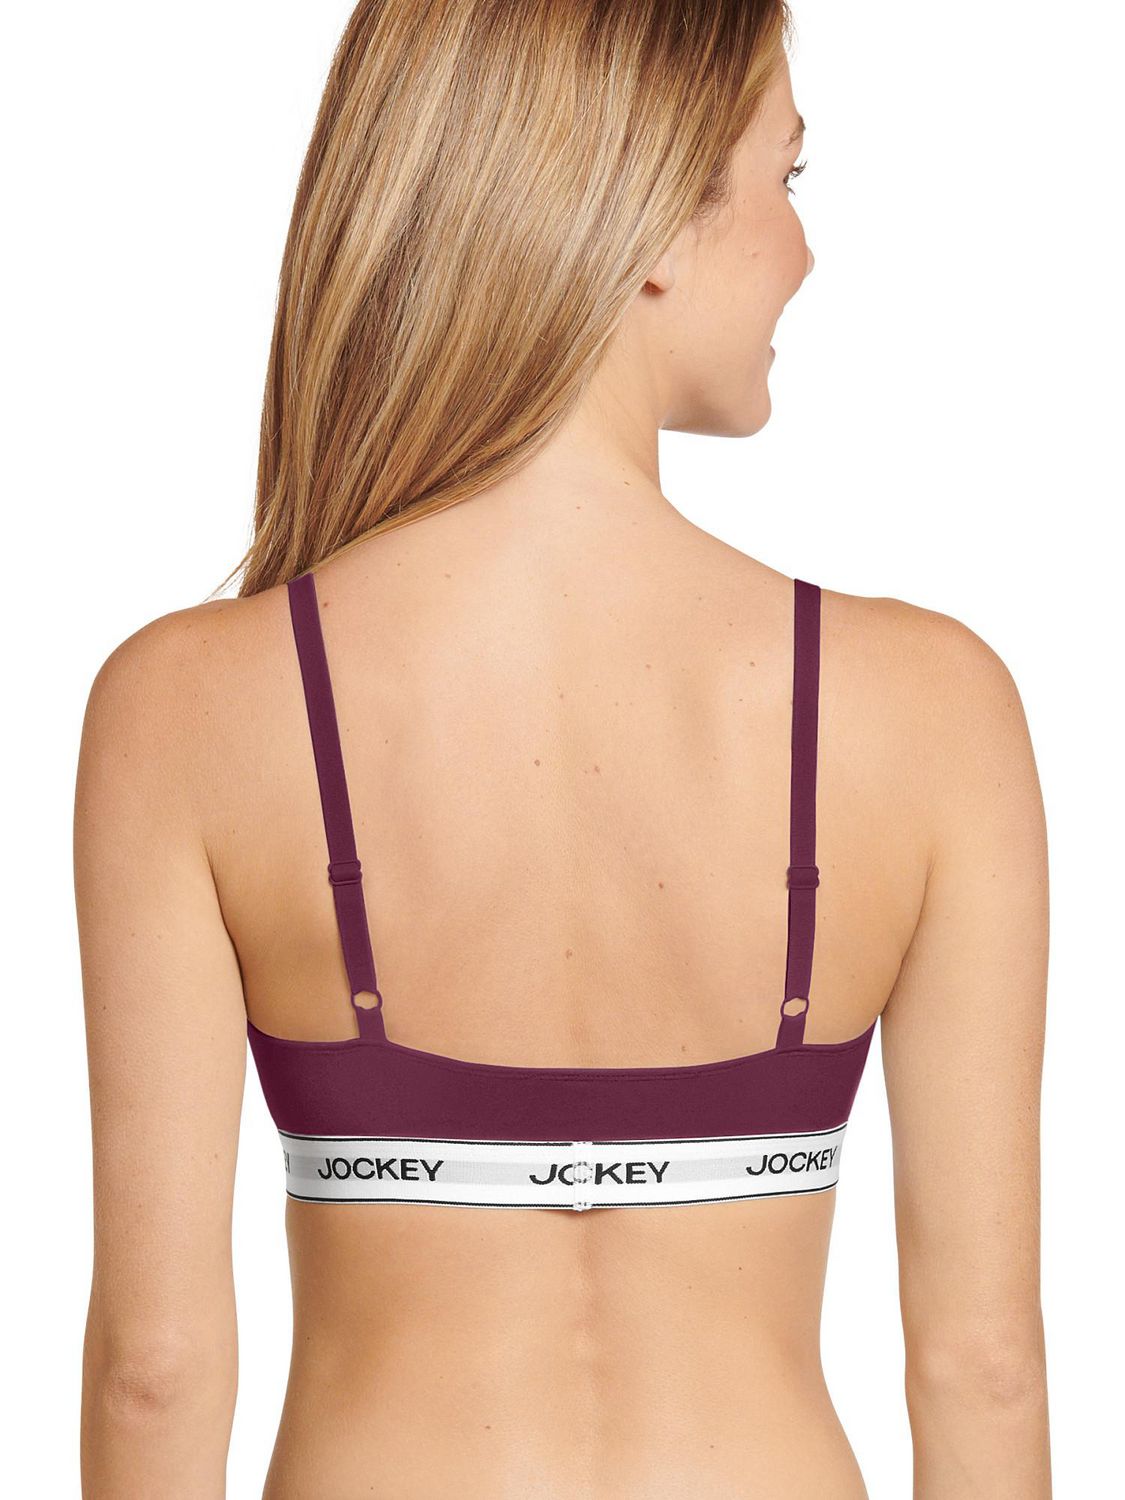 Jockey® Essentials Women's Cotton Stretch Triangle Bralette, Jockey  Essentials Cotton Stretch Triangle Bralette